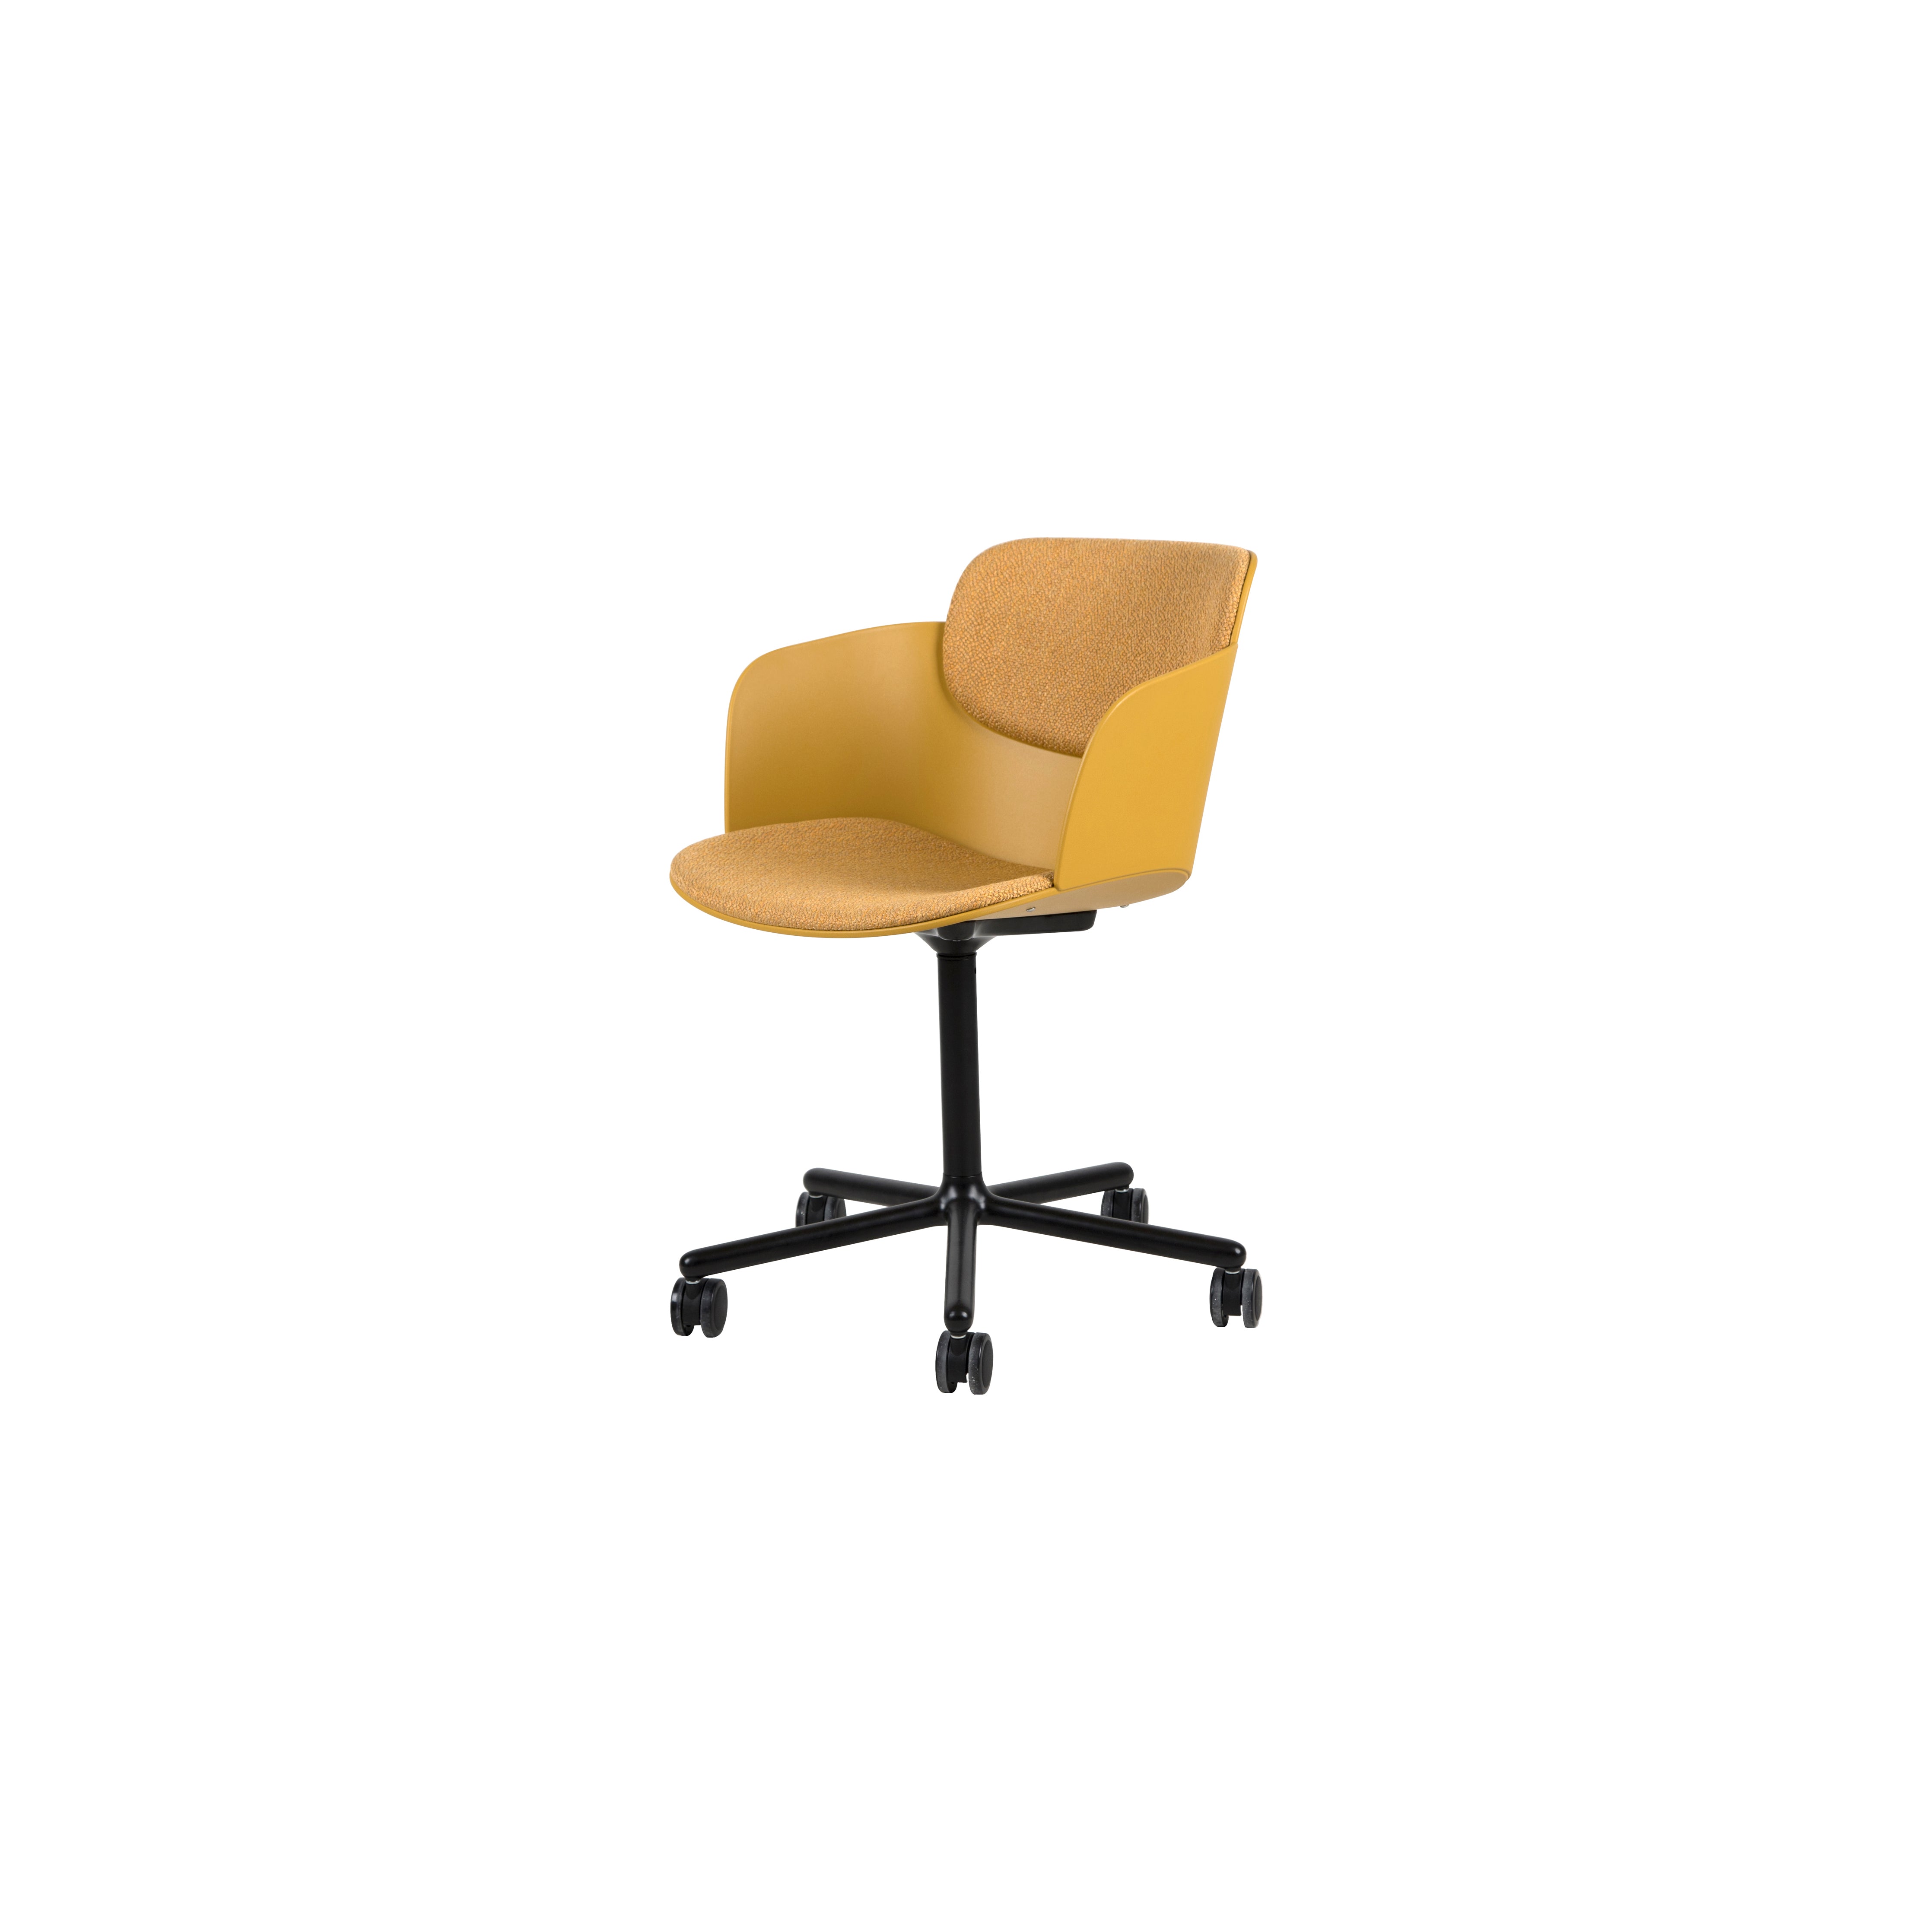 BAF - Office Chair